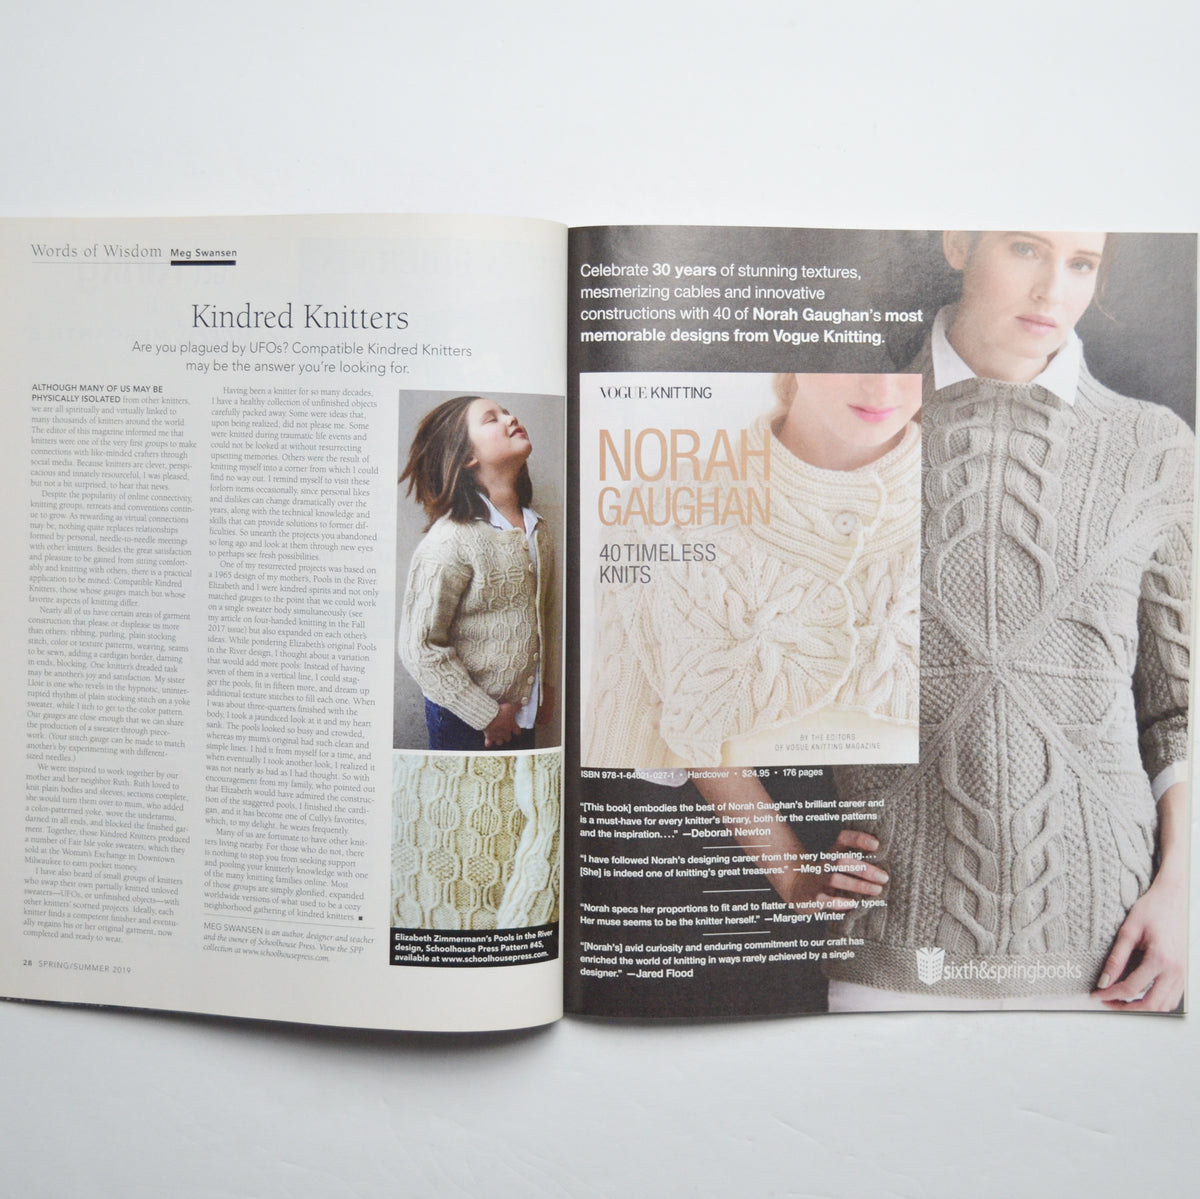 Vogue® Knitting: Norah Gaughan: 40 Timeless Knits